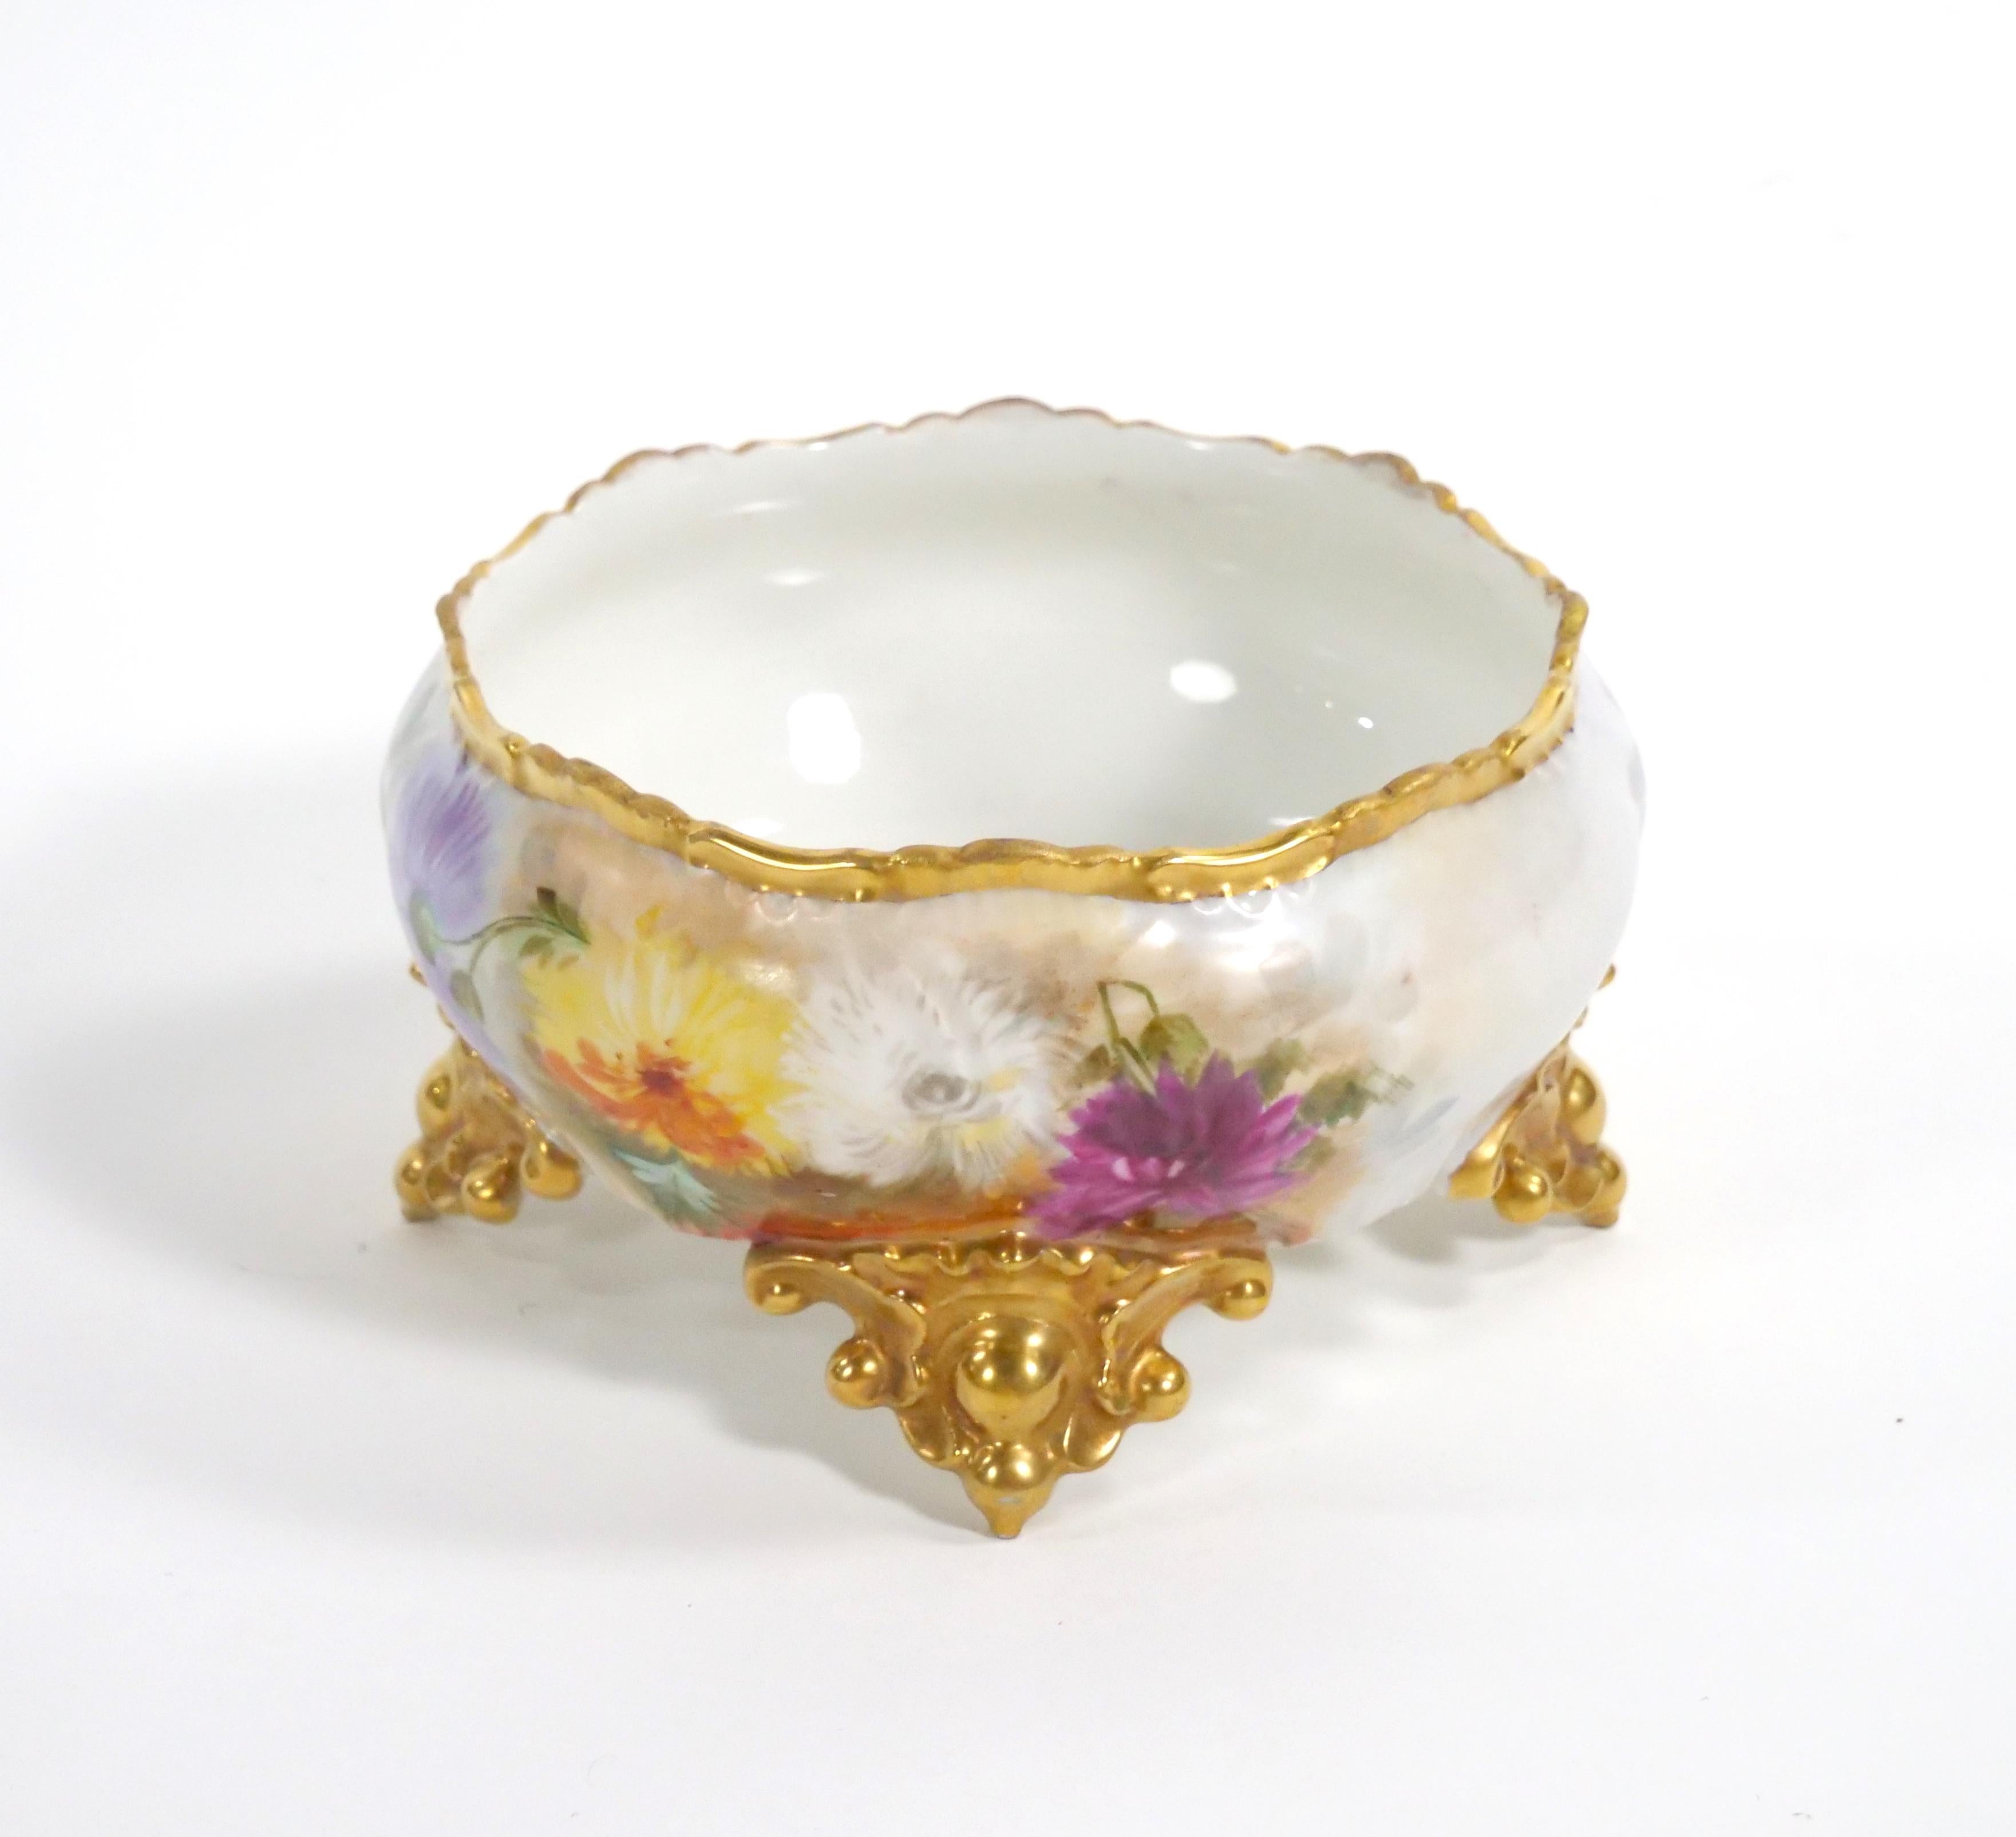 Rehaussez votre salle à manger ou votre décor avec ce magnifique bol à pied en porcelaine de Limoges, peint à la main et décoré à l'or fin. Cette pièce exquise est une véritable œuvre d'art qui rayonne d'élégance et de charme. Le centre de table est